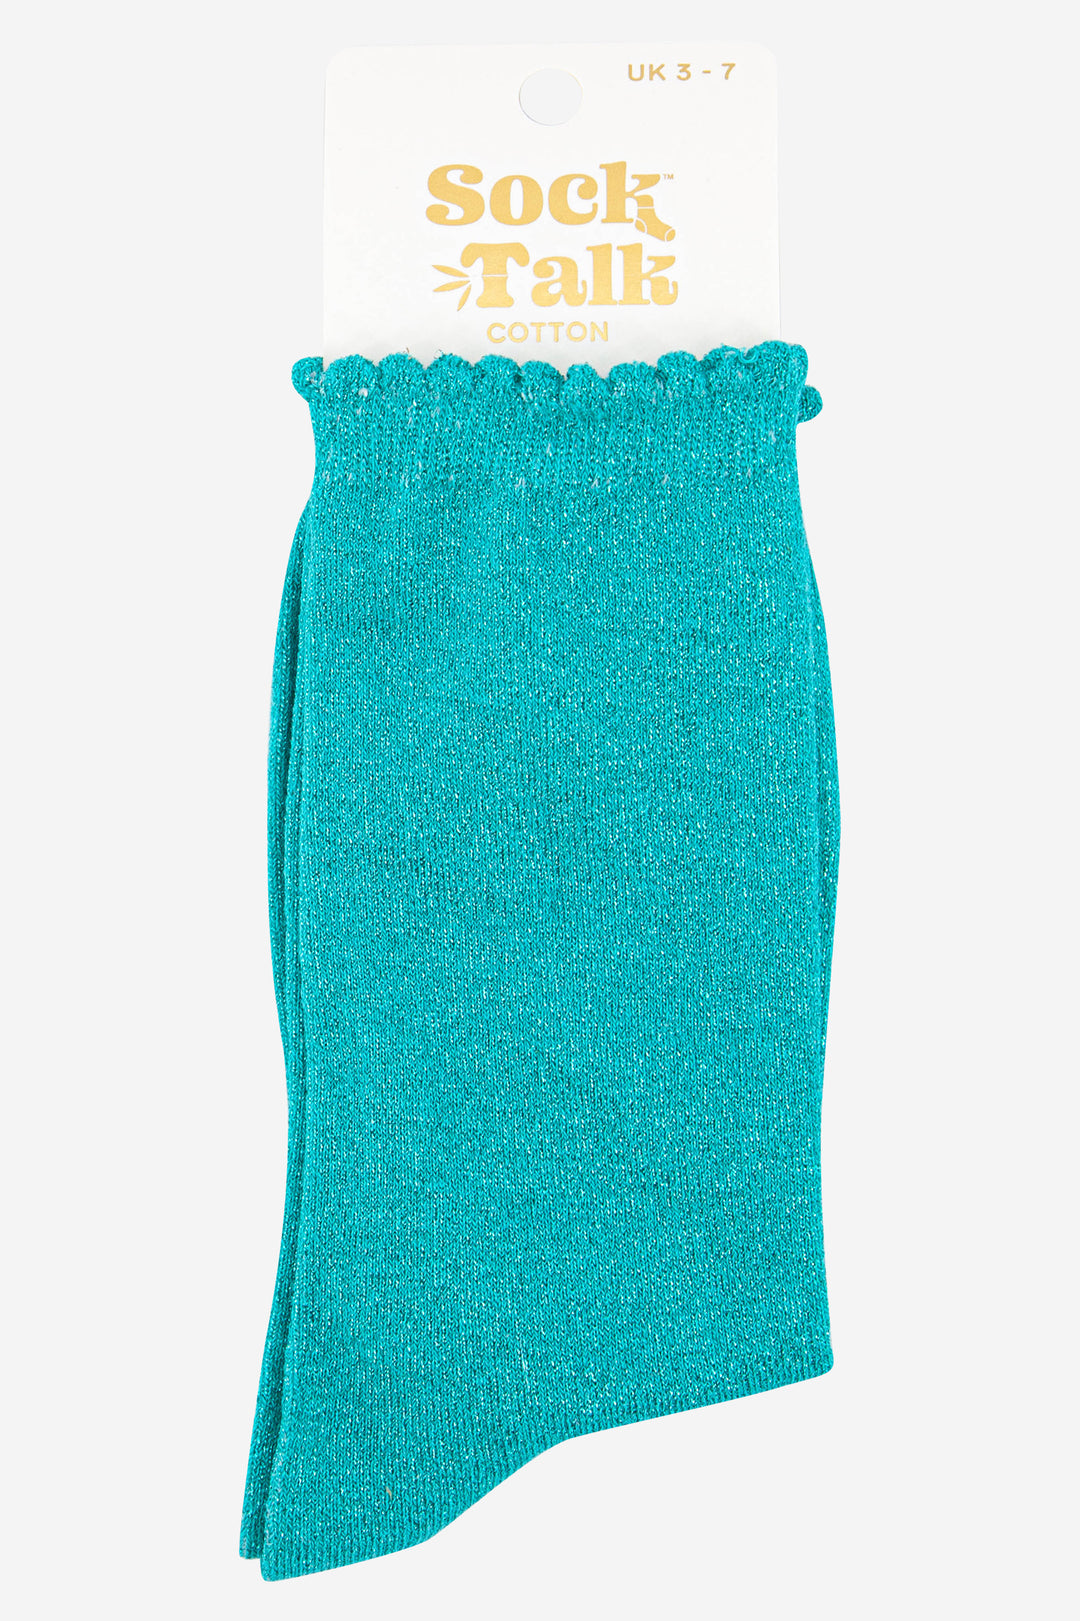 blue scalloped cuff cotton glitter socks uk size 3-7